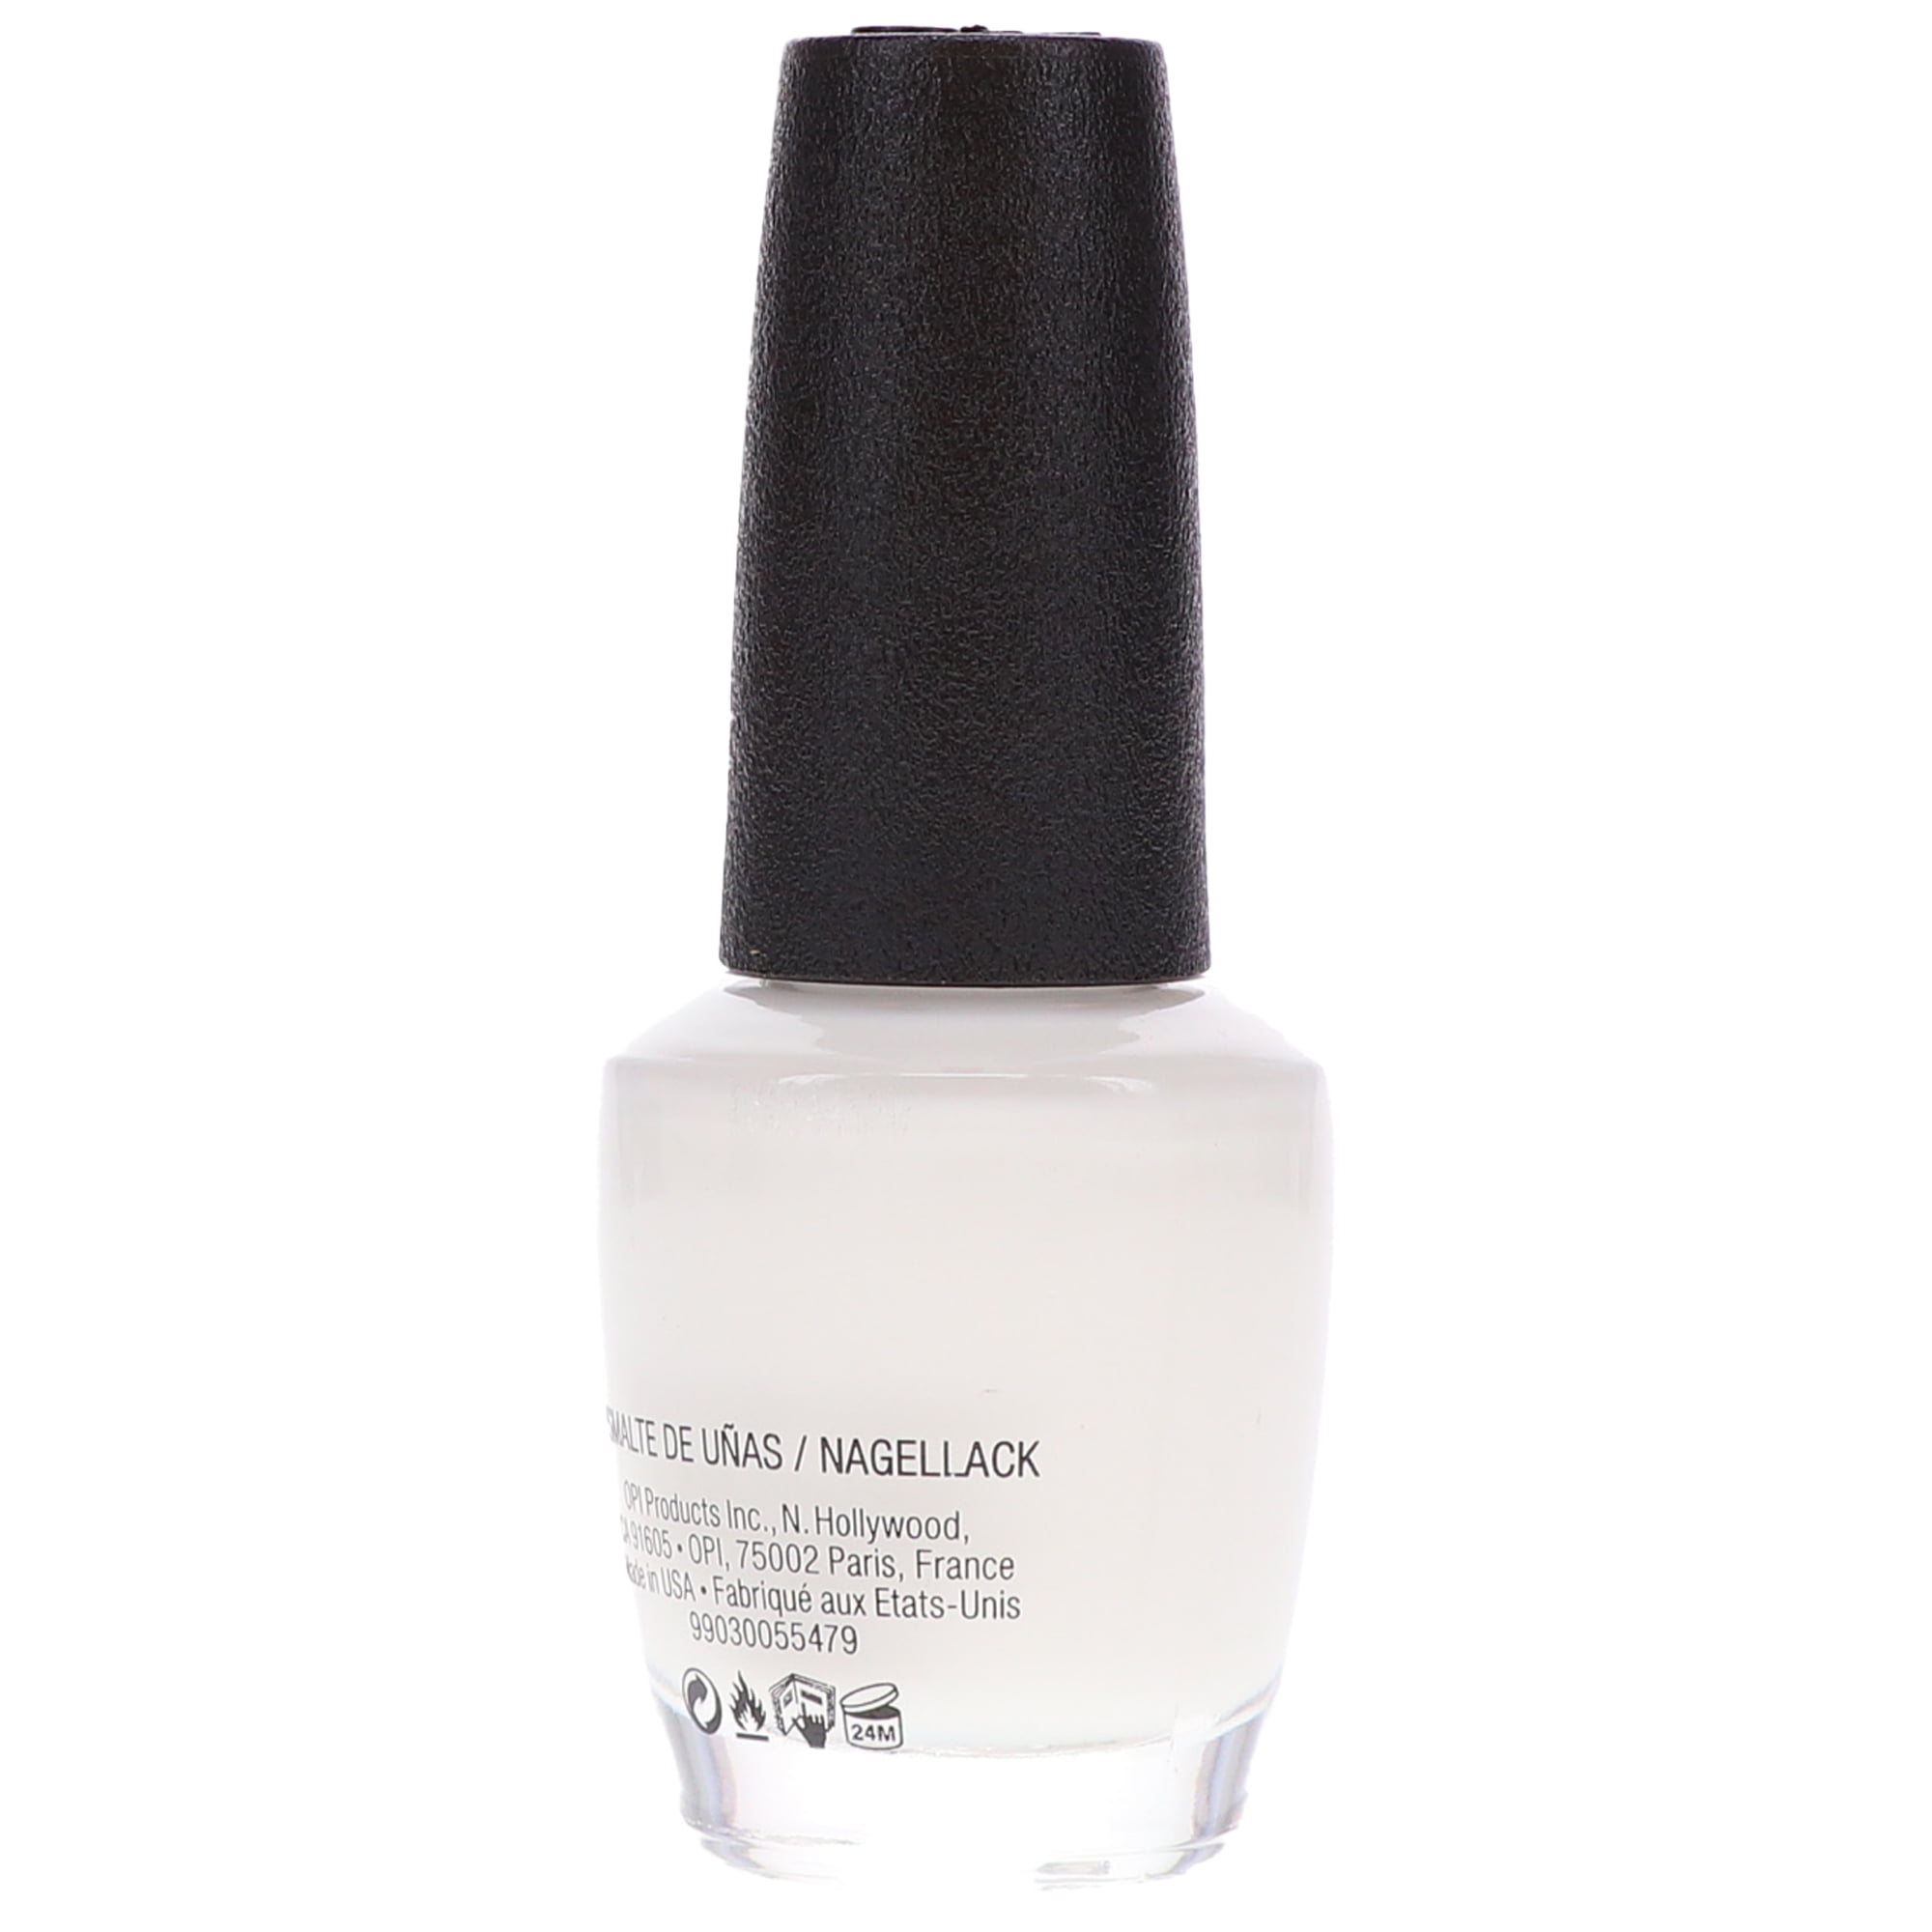 Milky White Nails | White gel nails, White nails, Oval nails